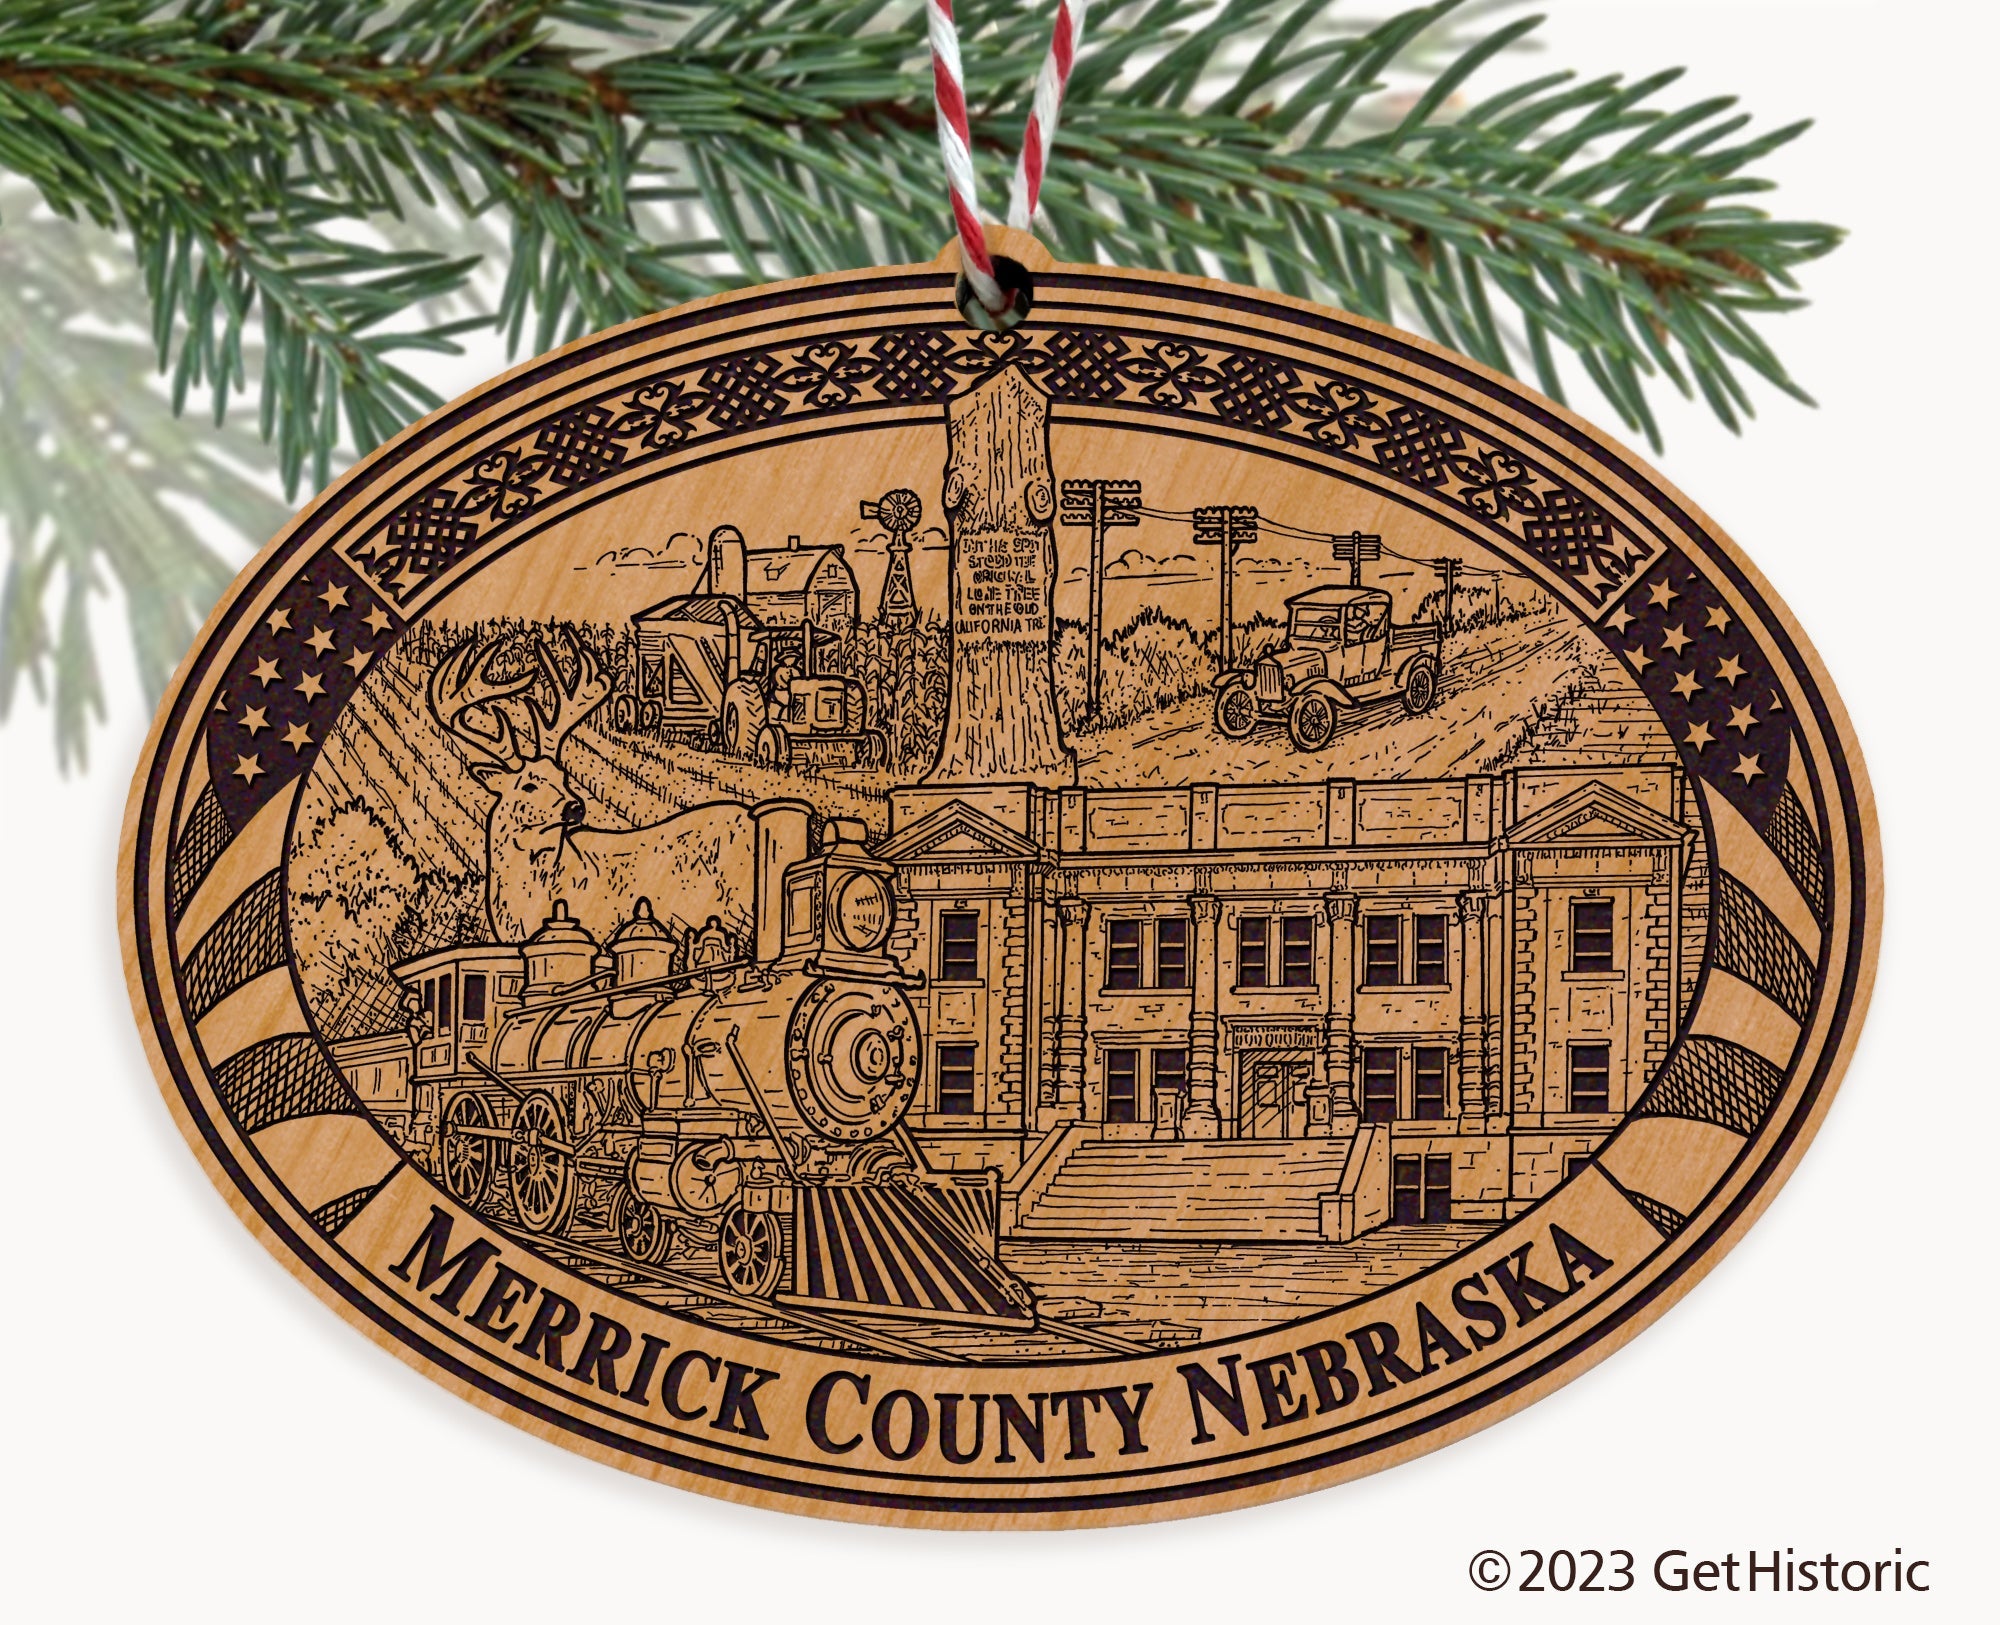 Merrick County Nebraska Engraved Natural Ornament